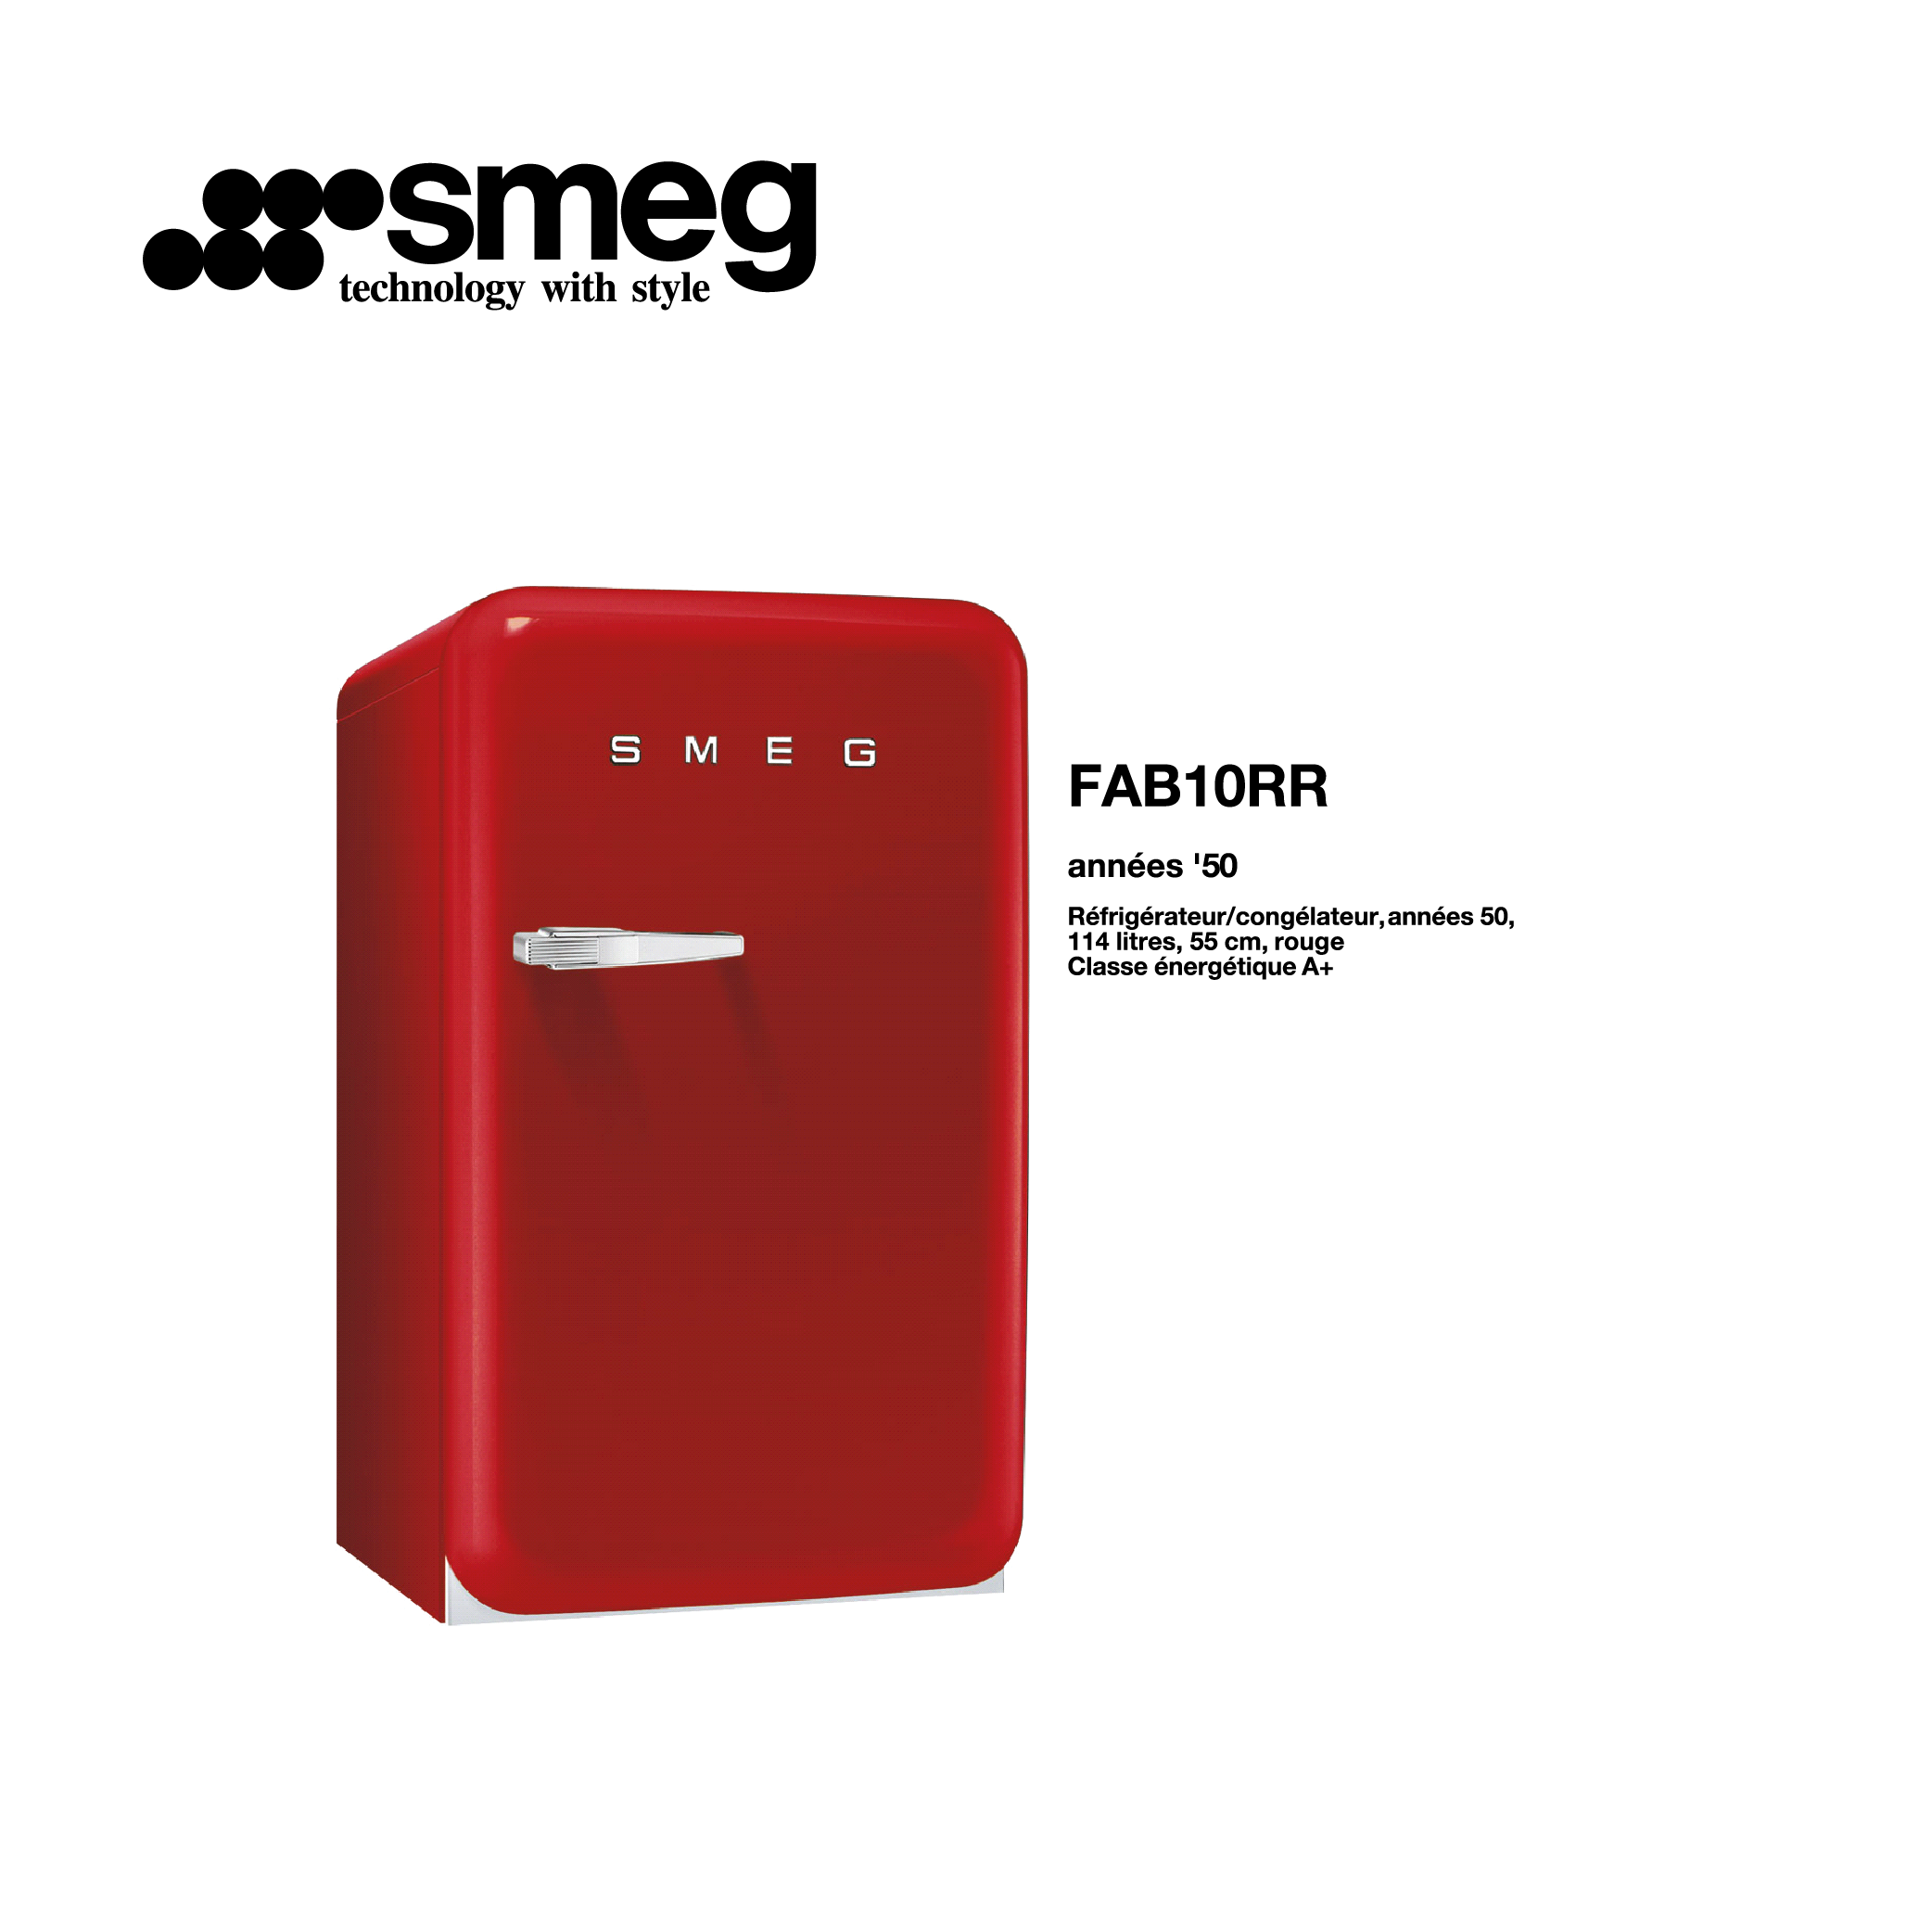 minibar refrigerateur congelateur 114l 55cm couleur Rouge style années 50 FAB10RR